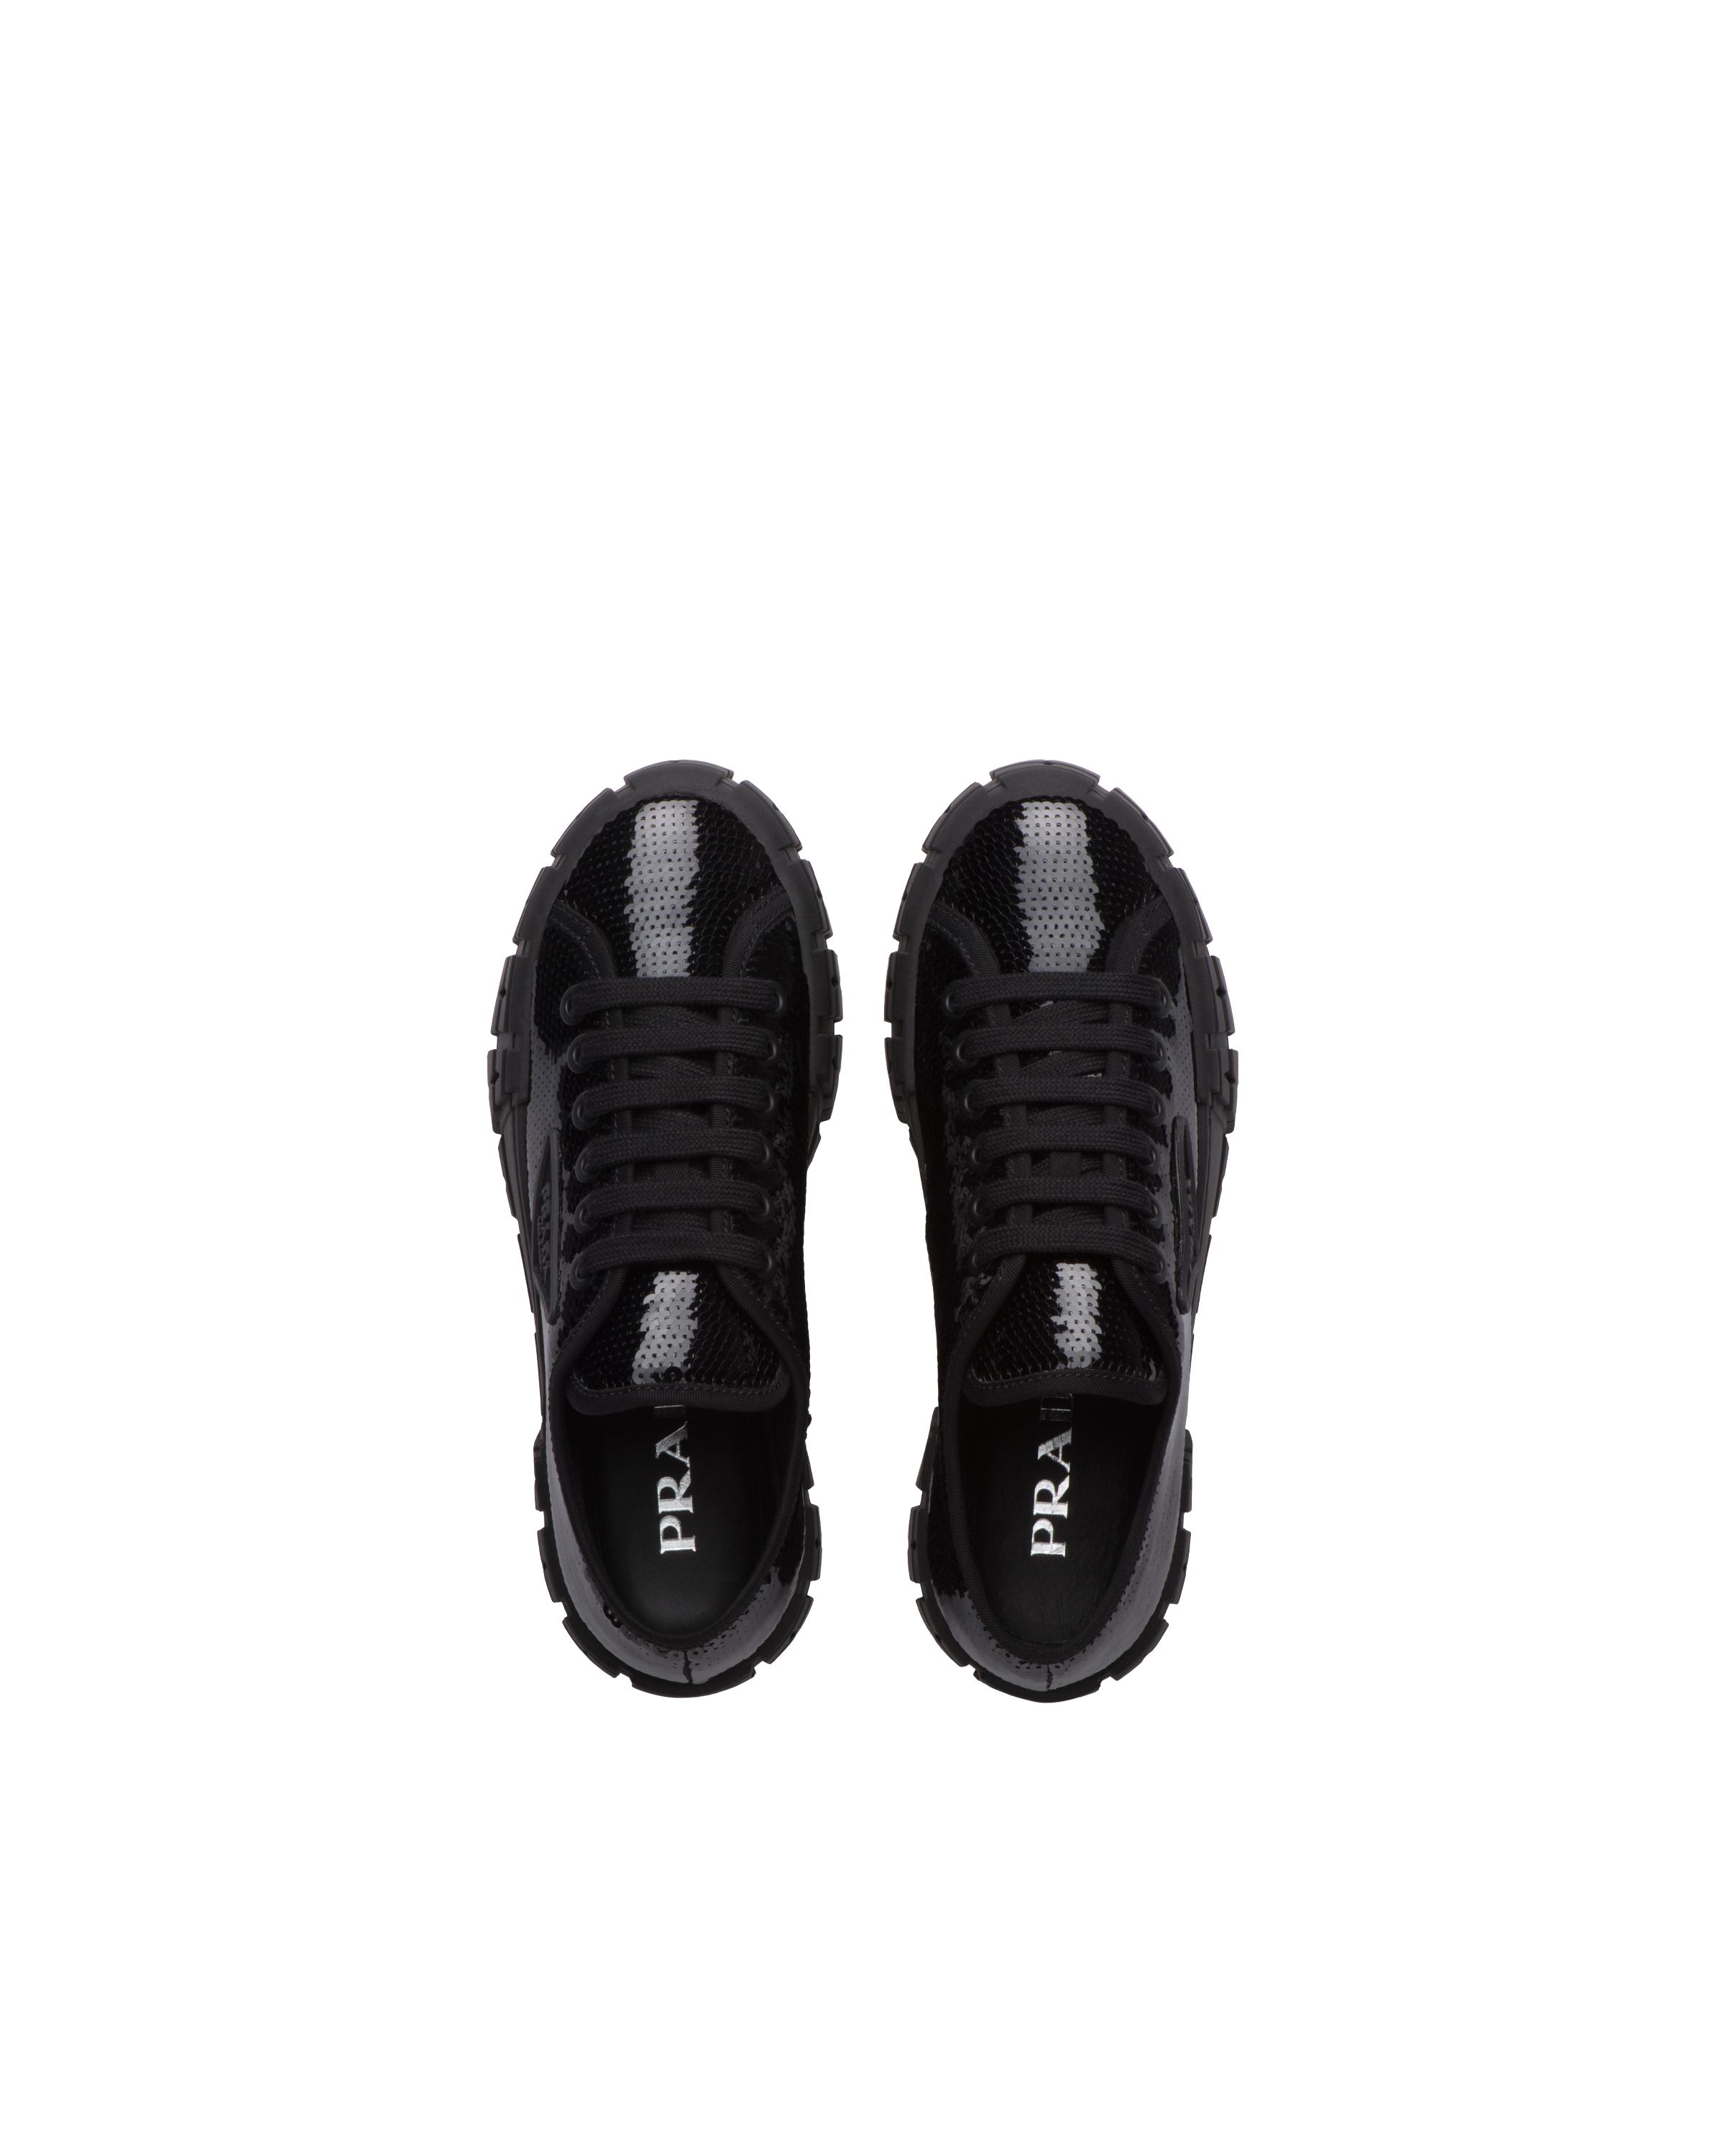 Prada Double Wheel Sequin Sneakers in Black | Lyst